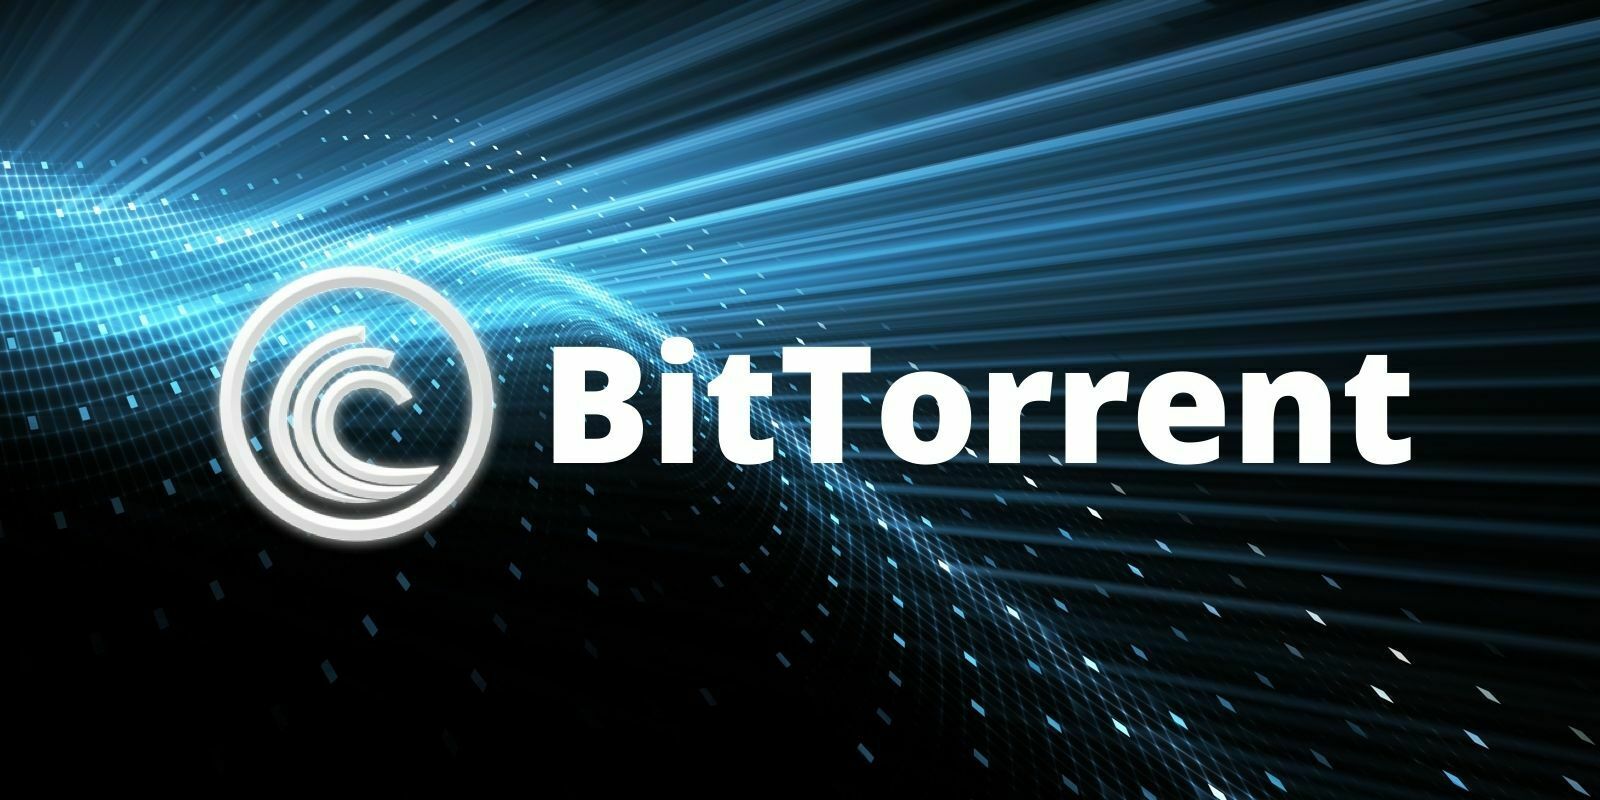 Le service BitTorrent de TRON atteint les 2 milliards de téléchargements